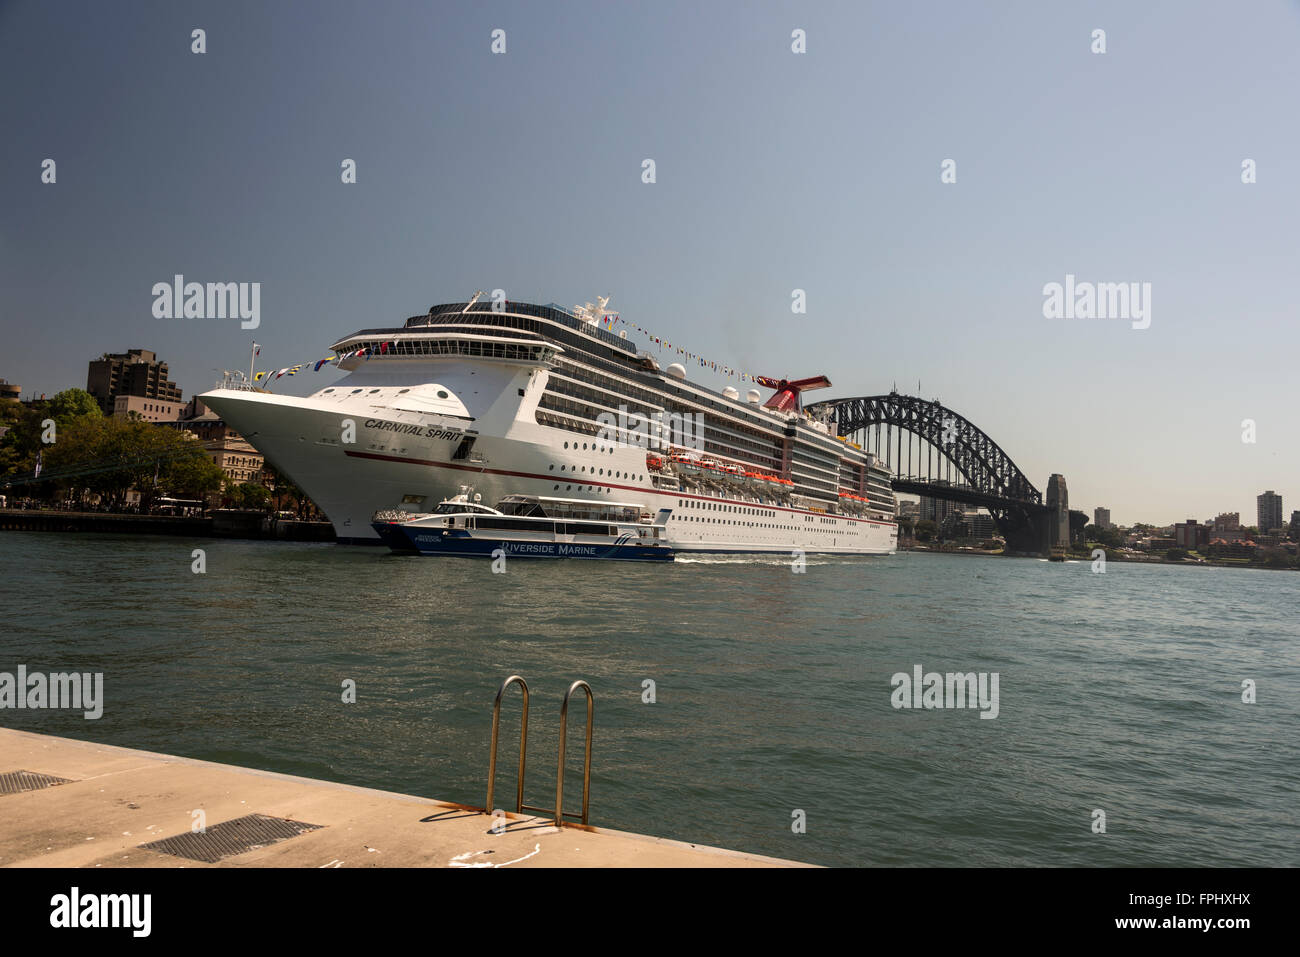 La nave da crociera Carnival spirito ancorata in Circular Quay di Sydney, Nuovo Galles del Sud in Australia. Foto Stock